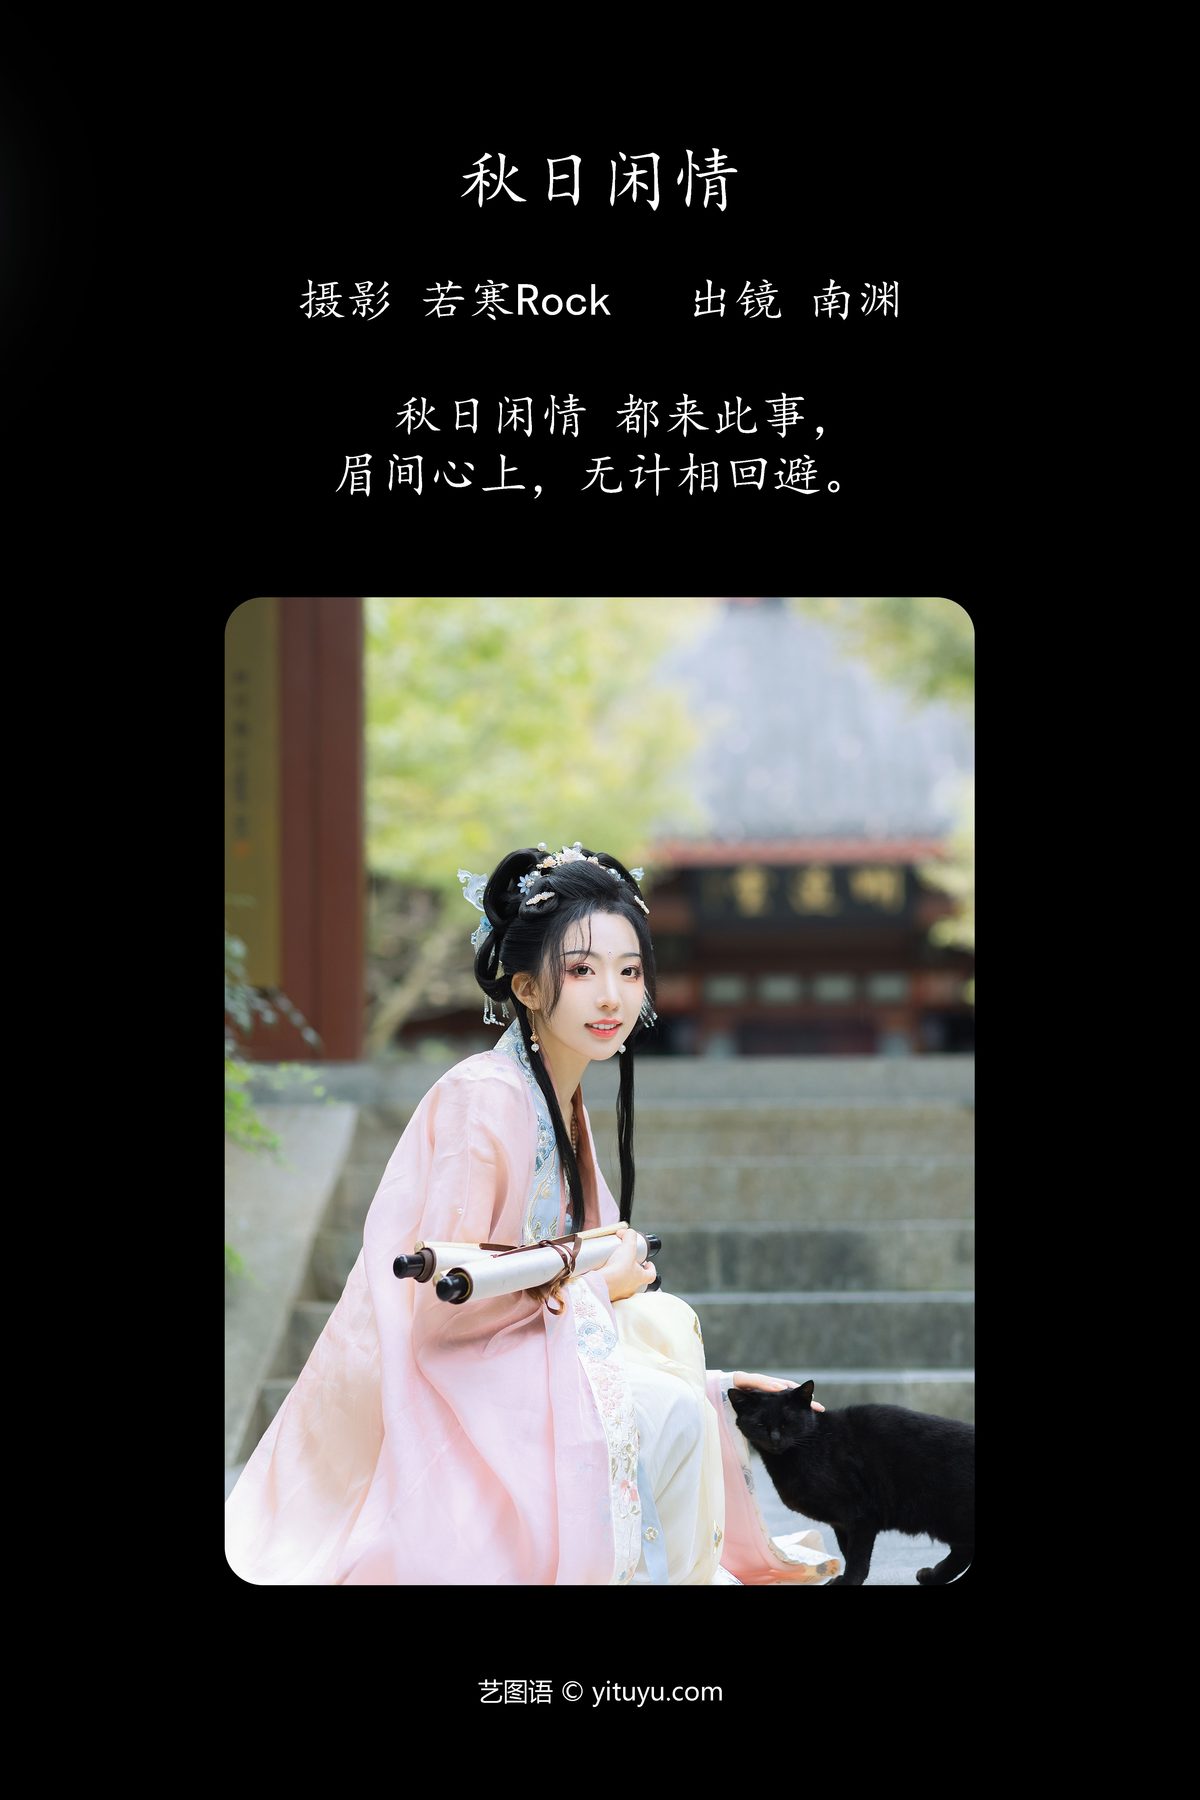 YiTuYu艺图语 Vol 4868 Shi Zhen De Nan Yuan 0002 7034442097.jpg